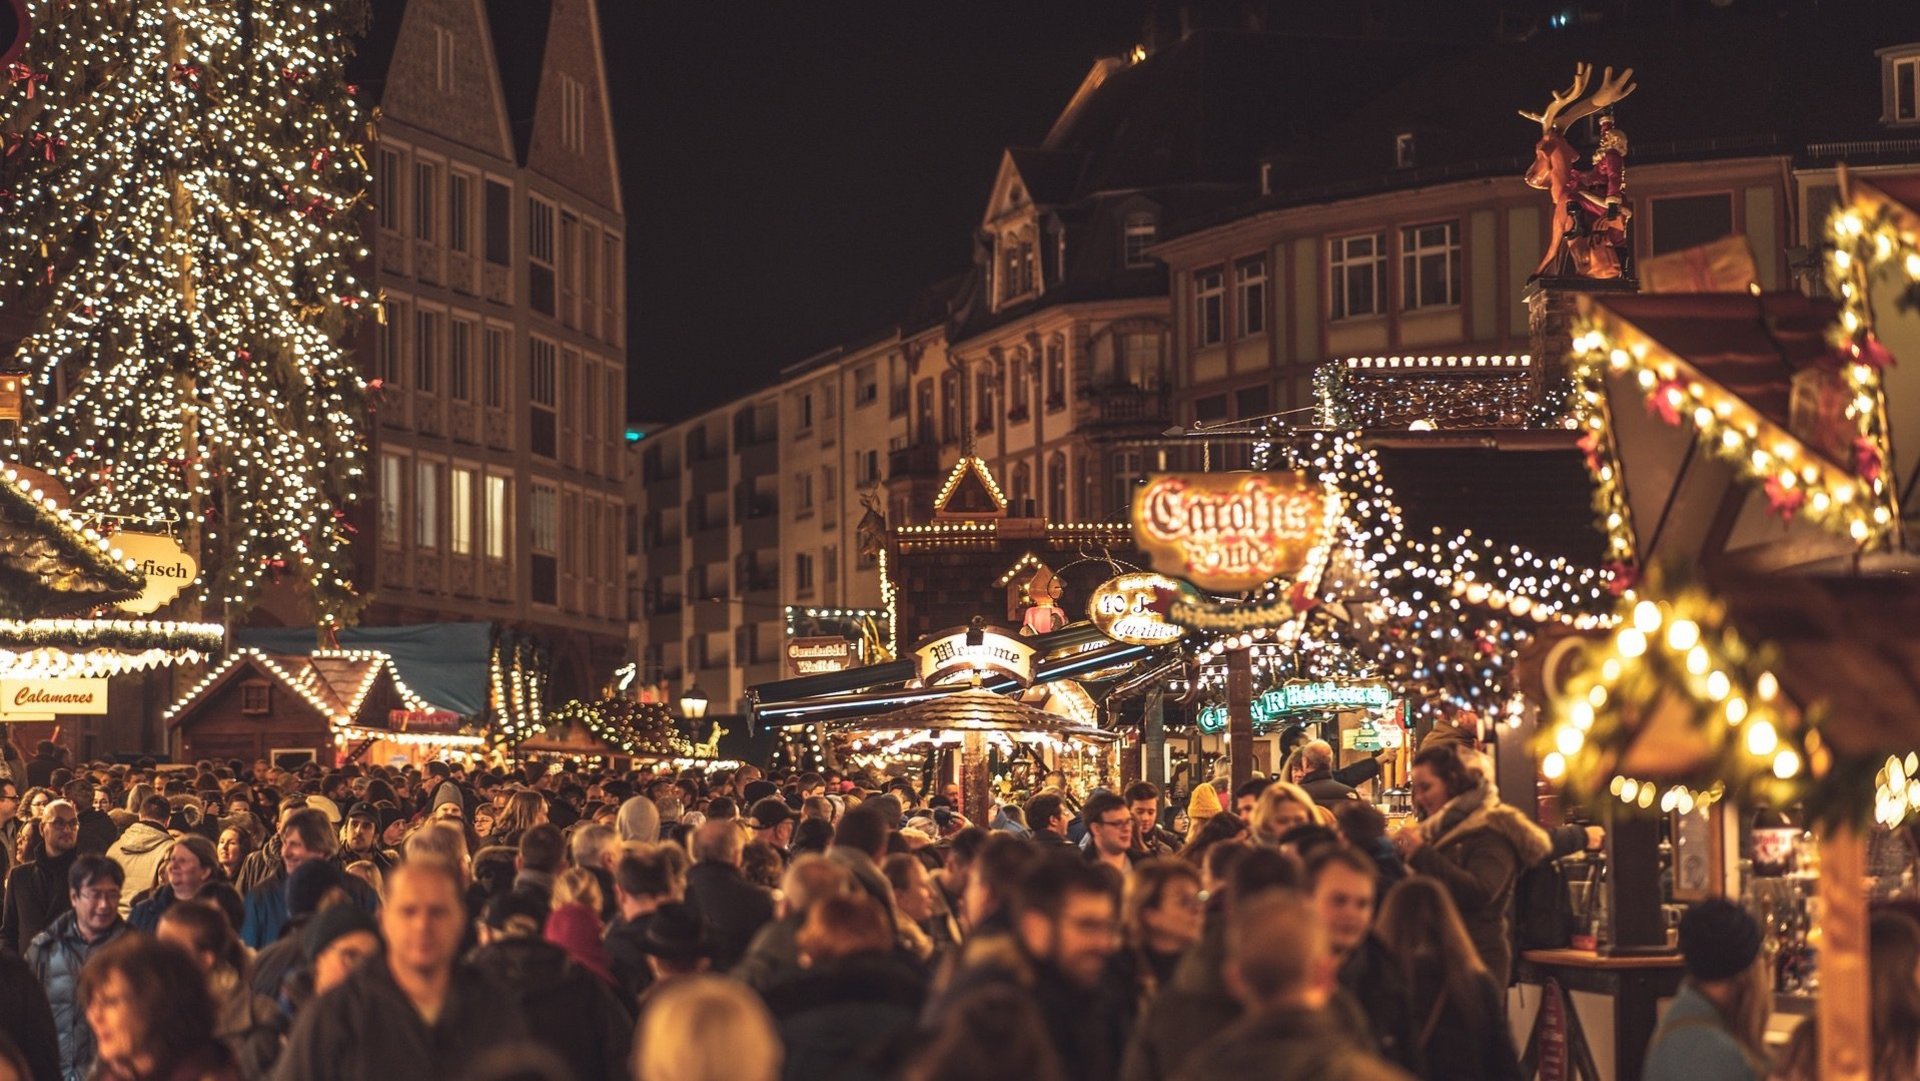 Das Bild zeigt eine Menschenmenge auf einem beleuchteten Weihnachtsmarkt.